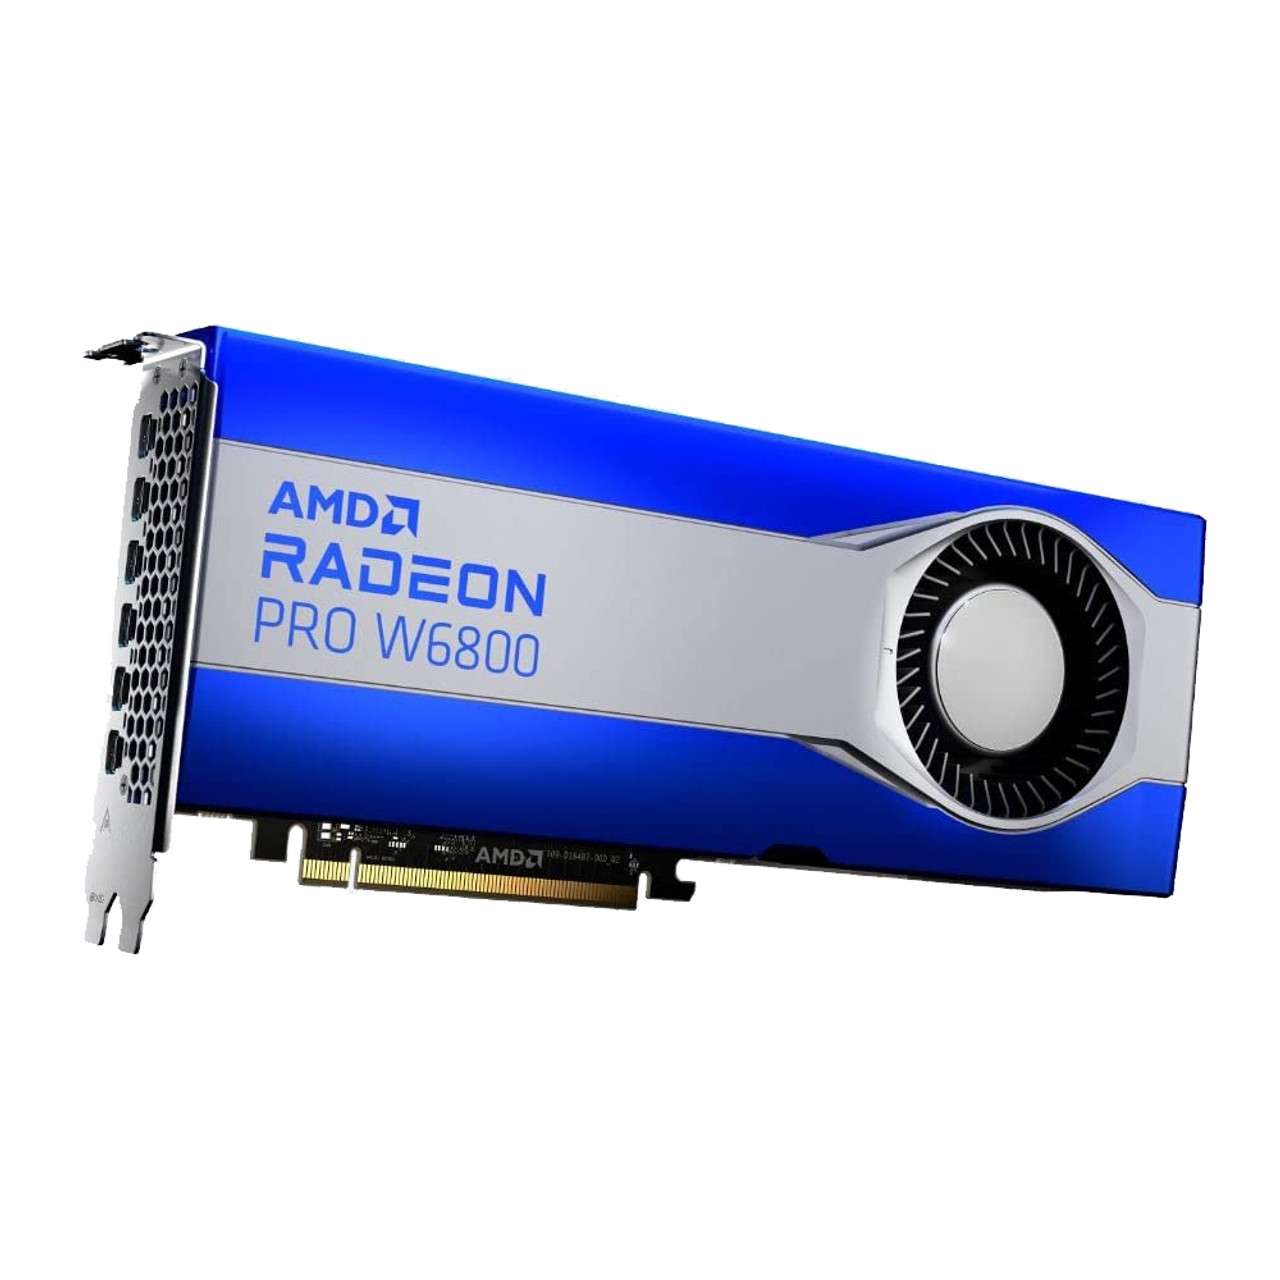 AMD ‎100-506157 RADEON Pro W6800 32GB GDDR6, 256 bit Bus Width, PCI Express 4.0 x16 - Mini DisplayPort, Graphic Card